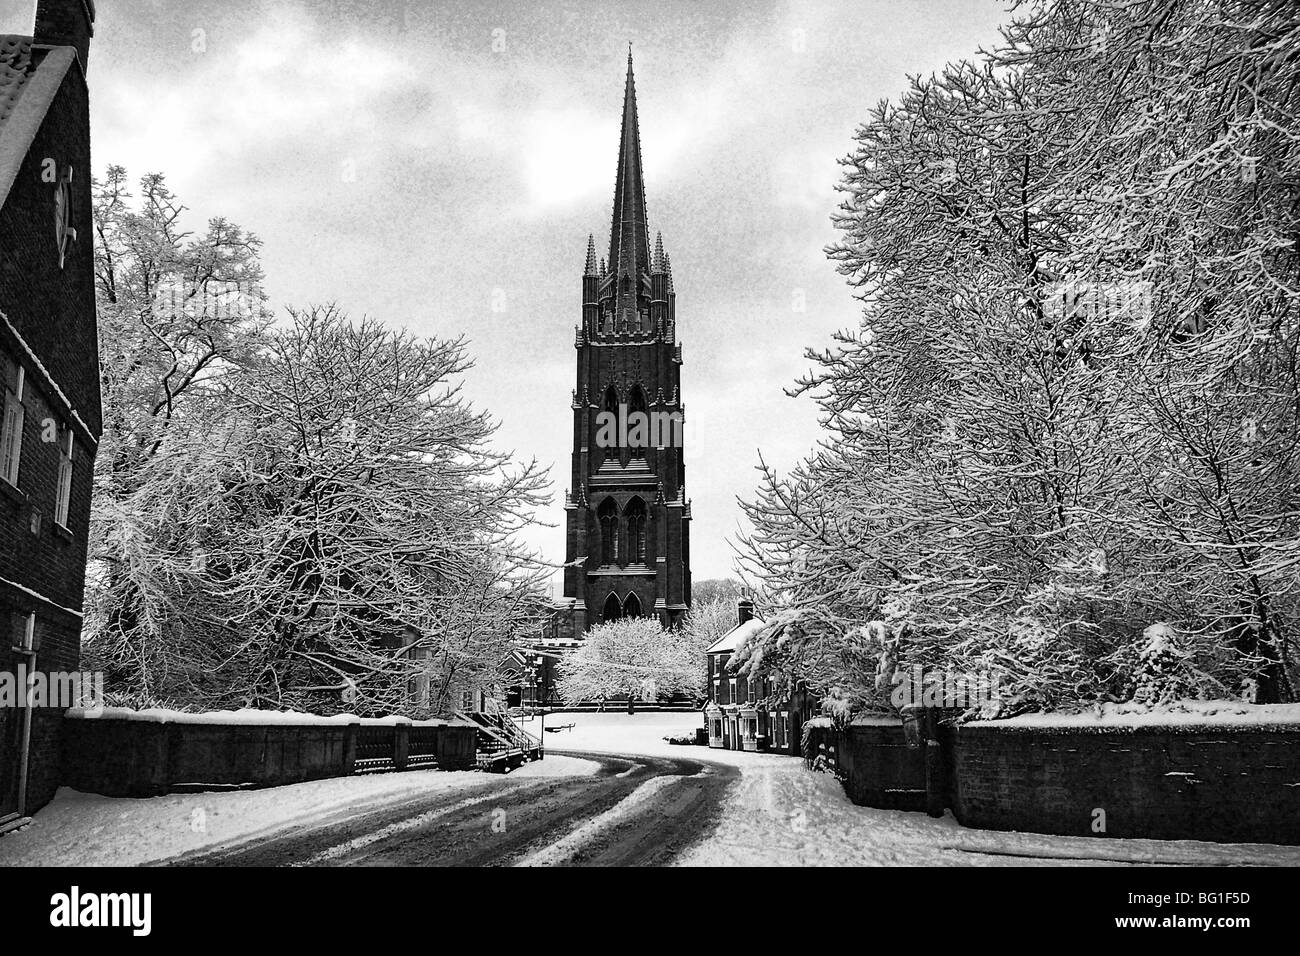 Neige, hiver voir de vue photo d'église paroissiale de St James Louth Lincolnshire avec fin clocher perpendiculaire et spire 15011 Banque D'Images